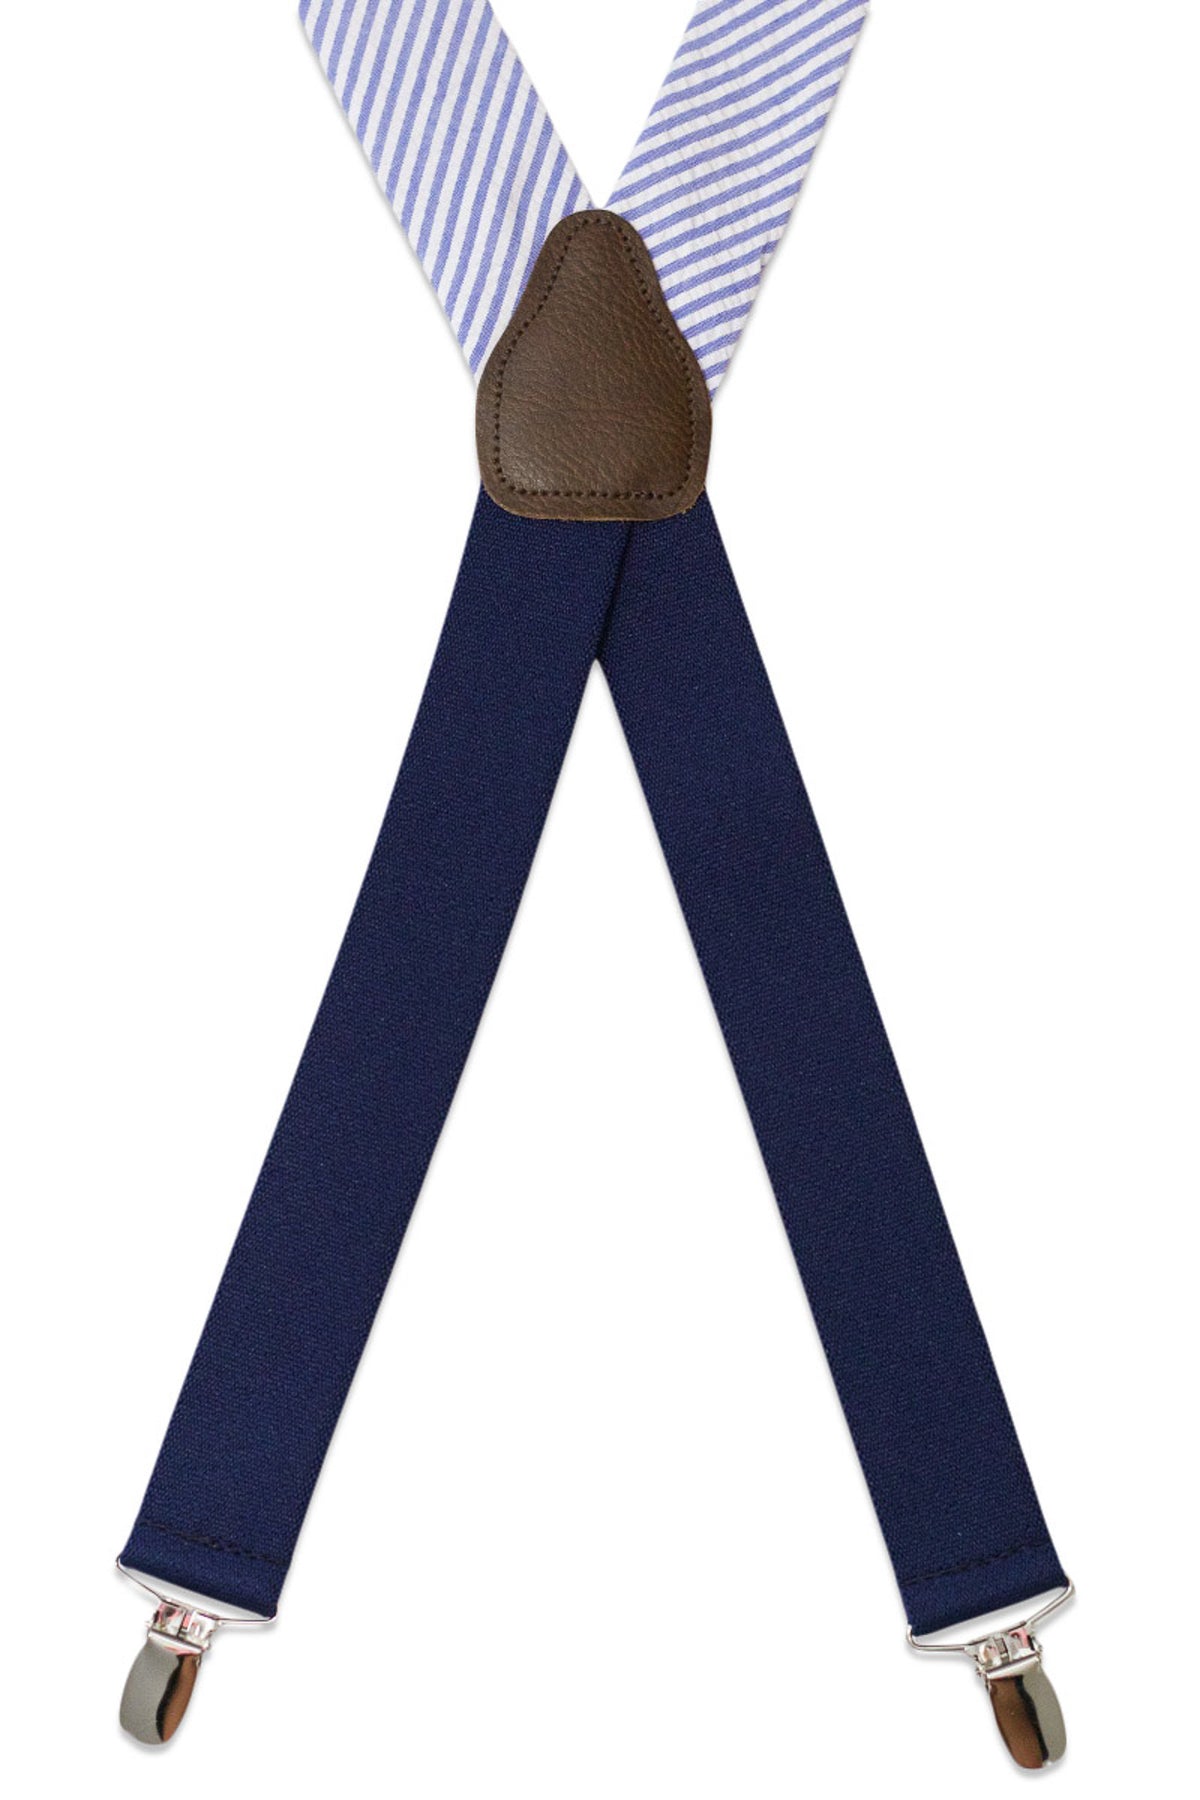 Classic Blue Seersucker Suspenders